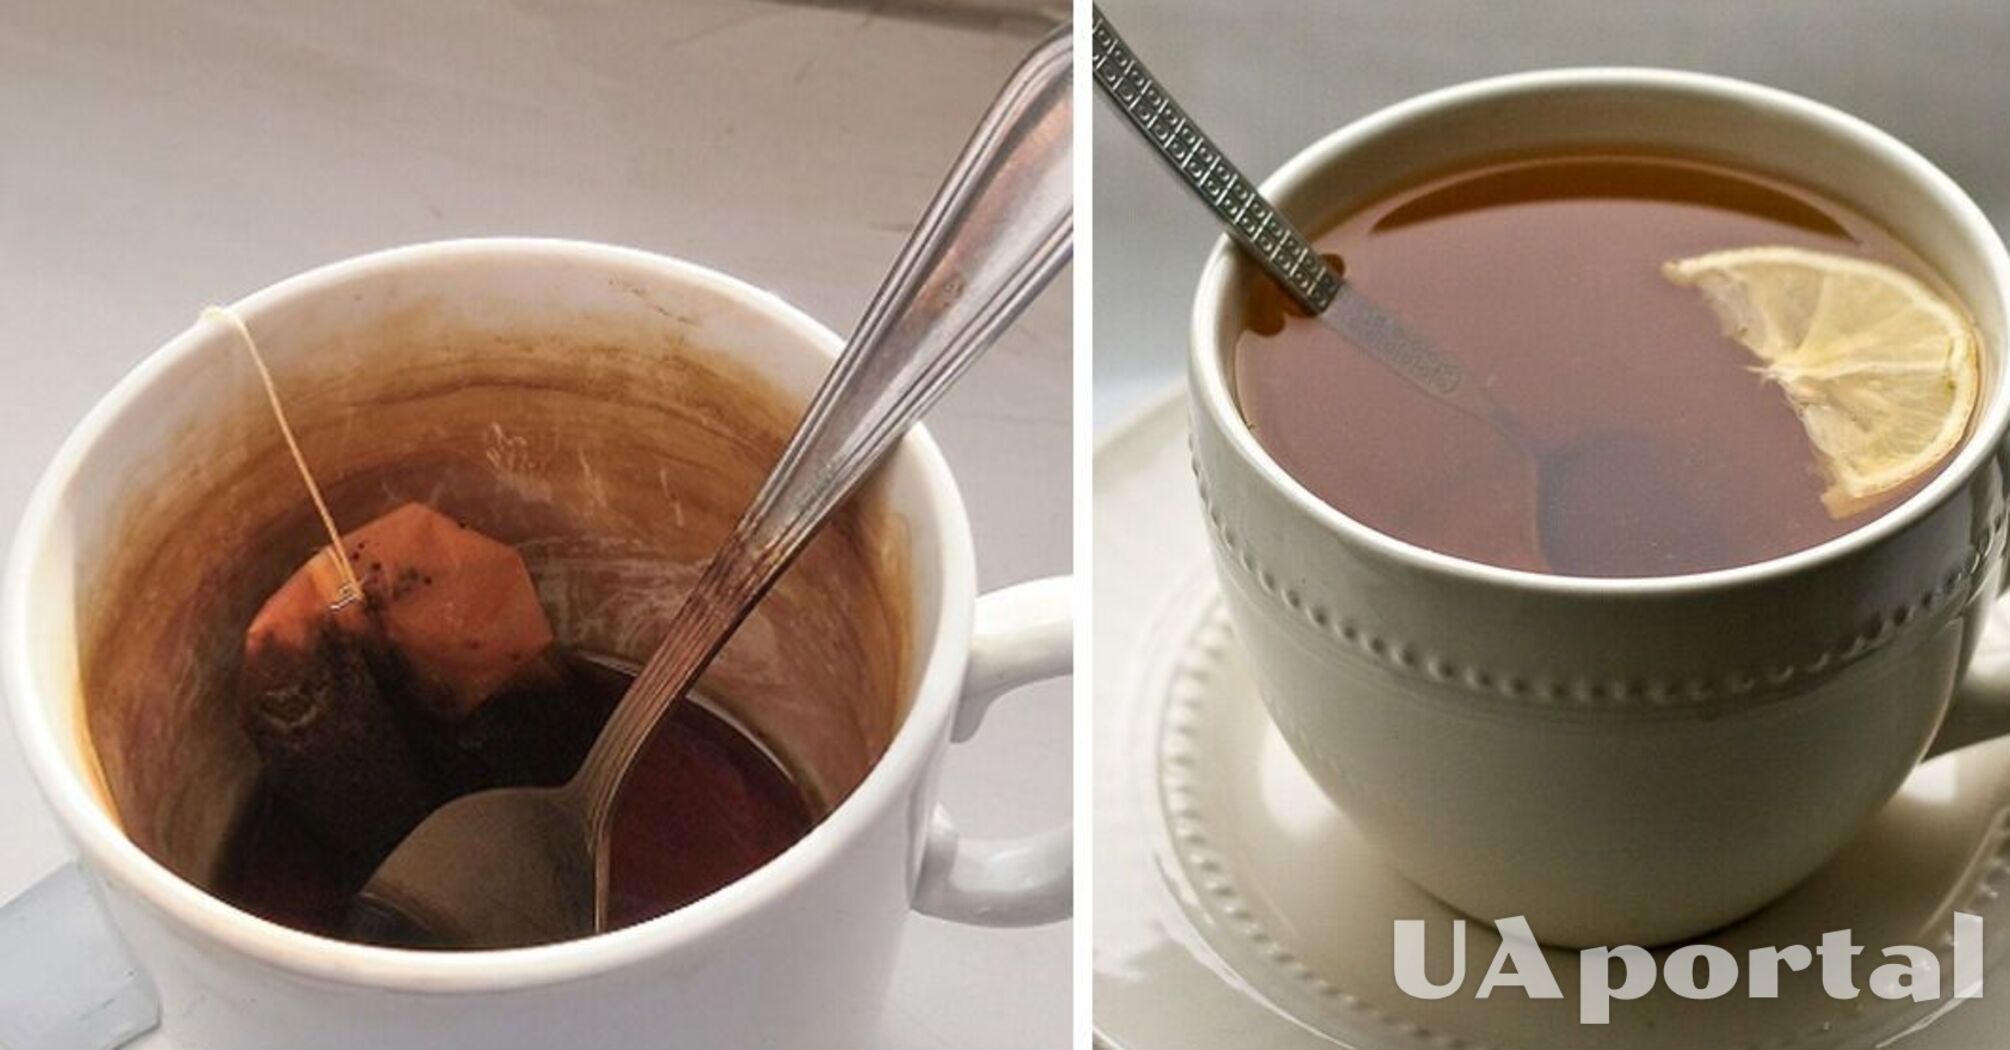 Експерти пояснили, чим можна дешево відмити коричневі плями від чаю з чашок